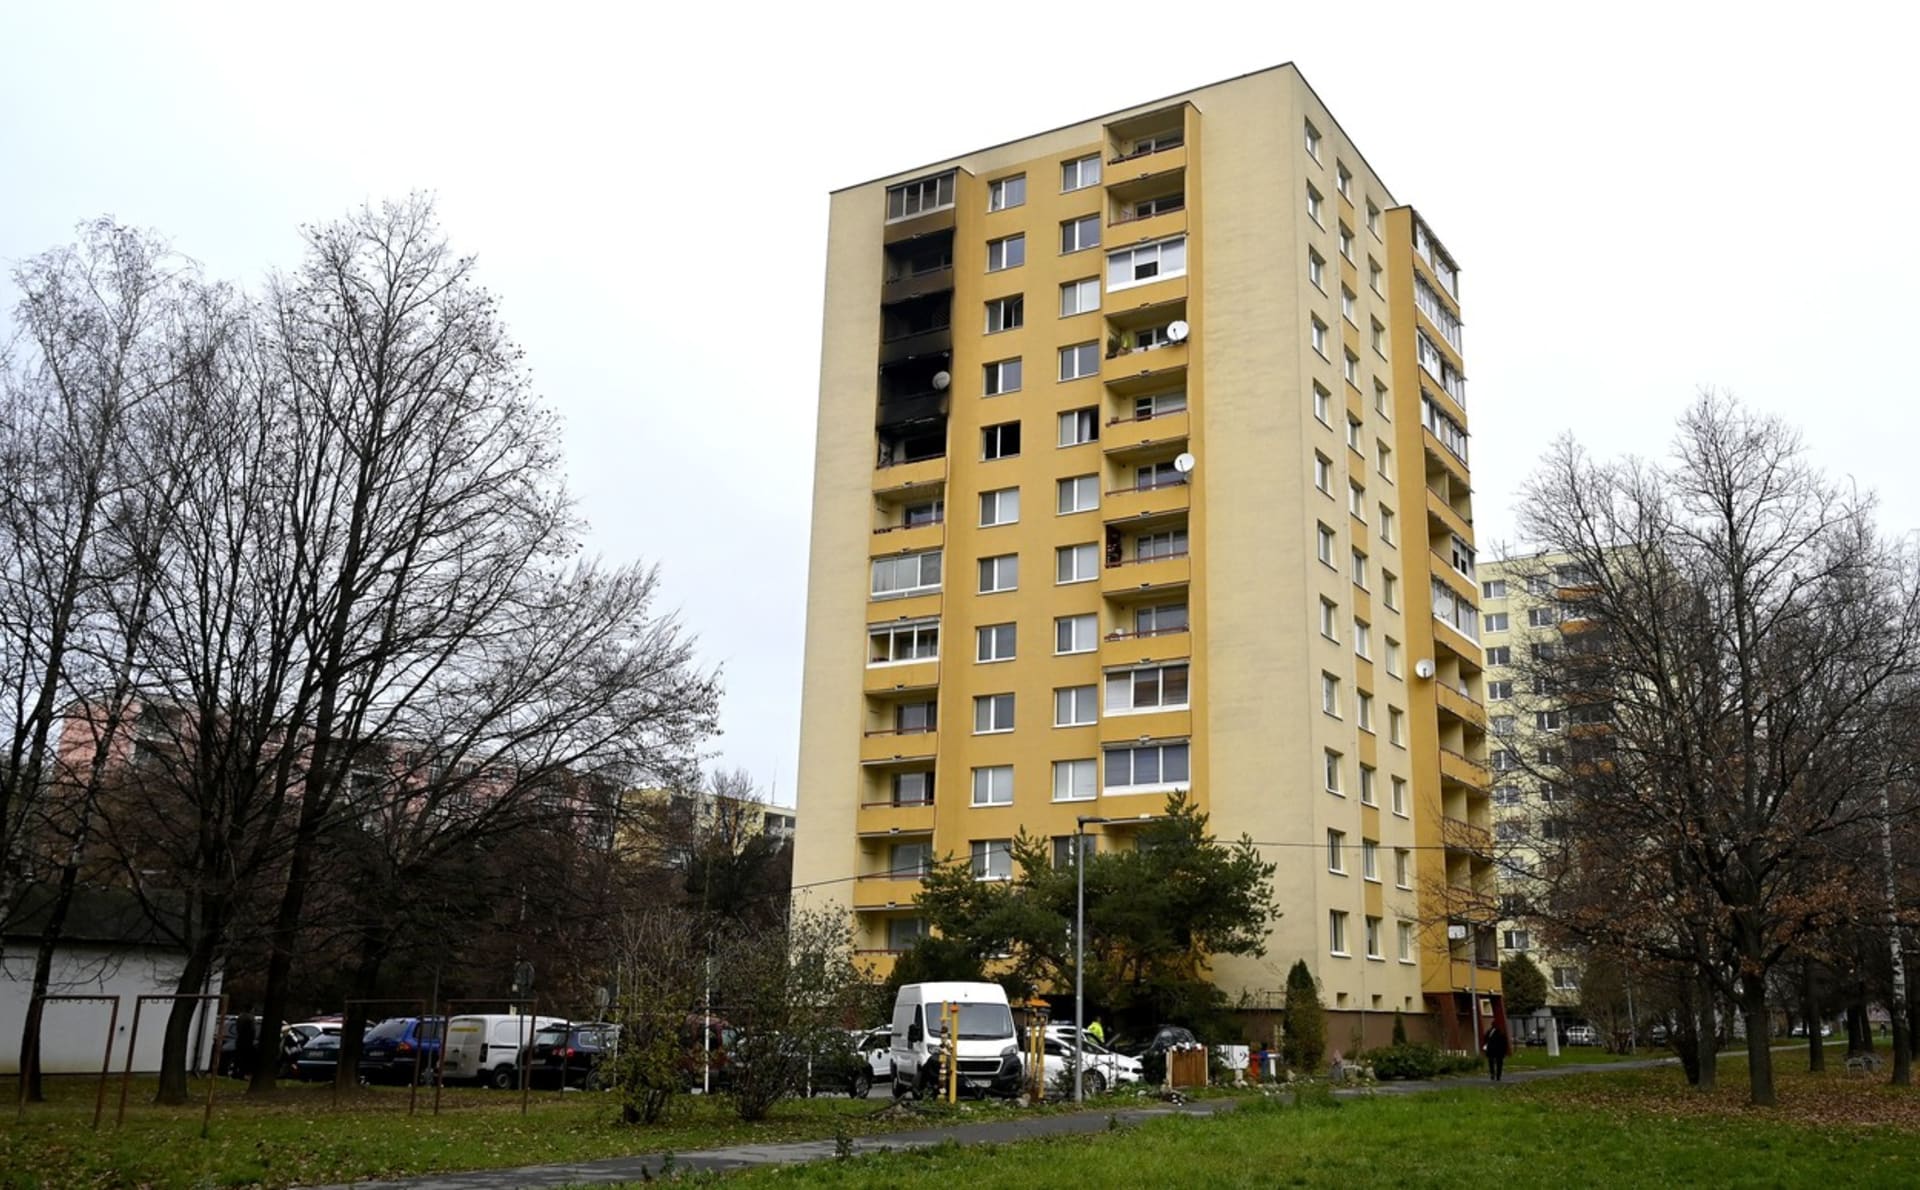 Požár v bytovém domě v Prešově si vyžádal dvě oběti